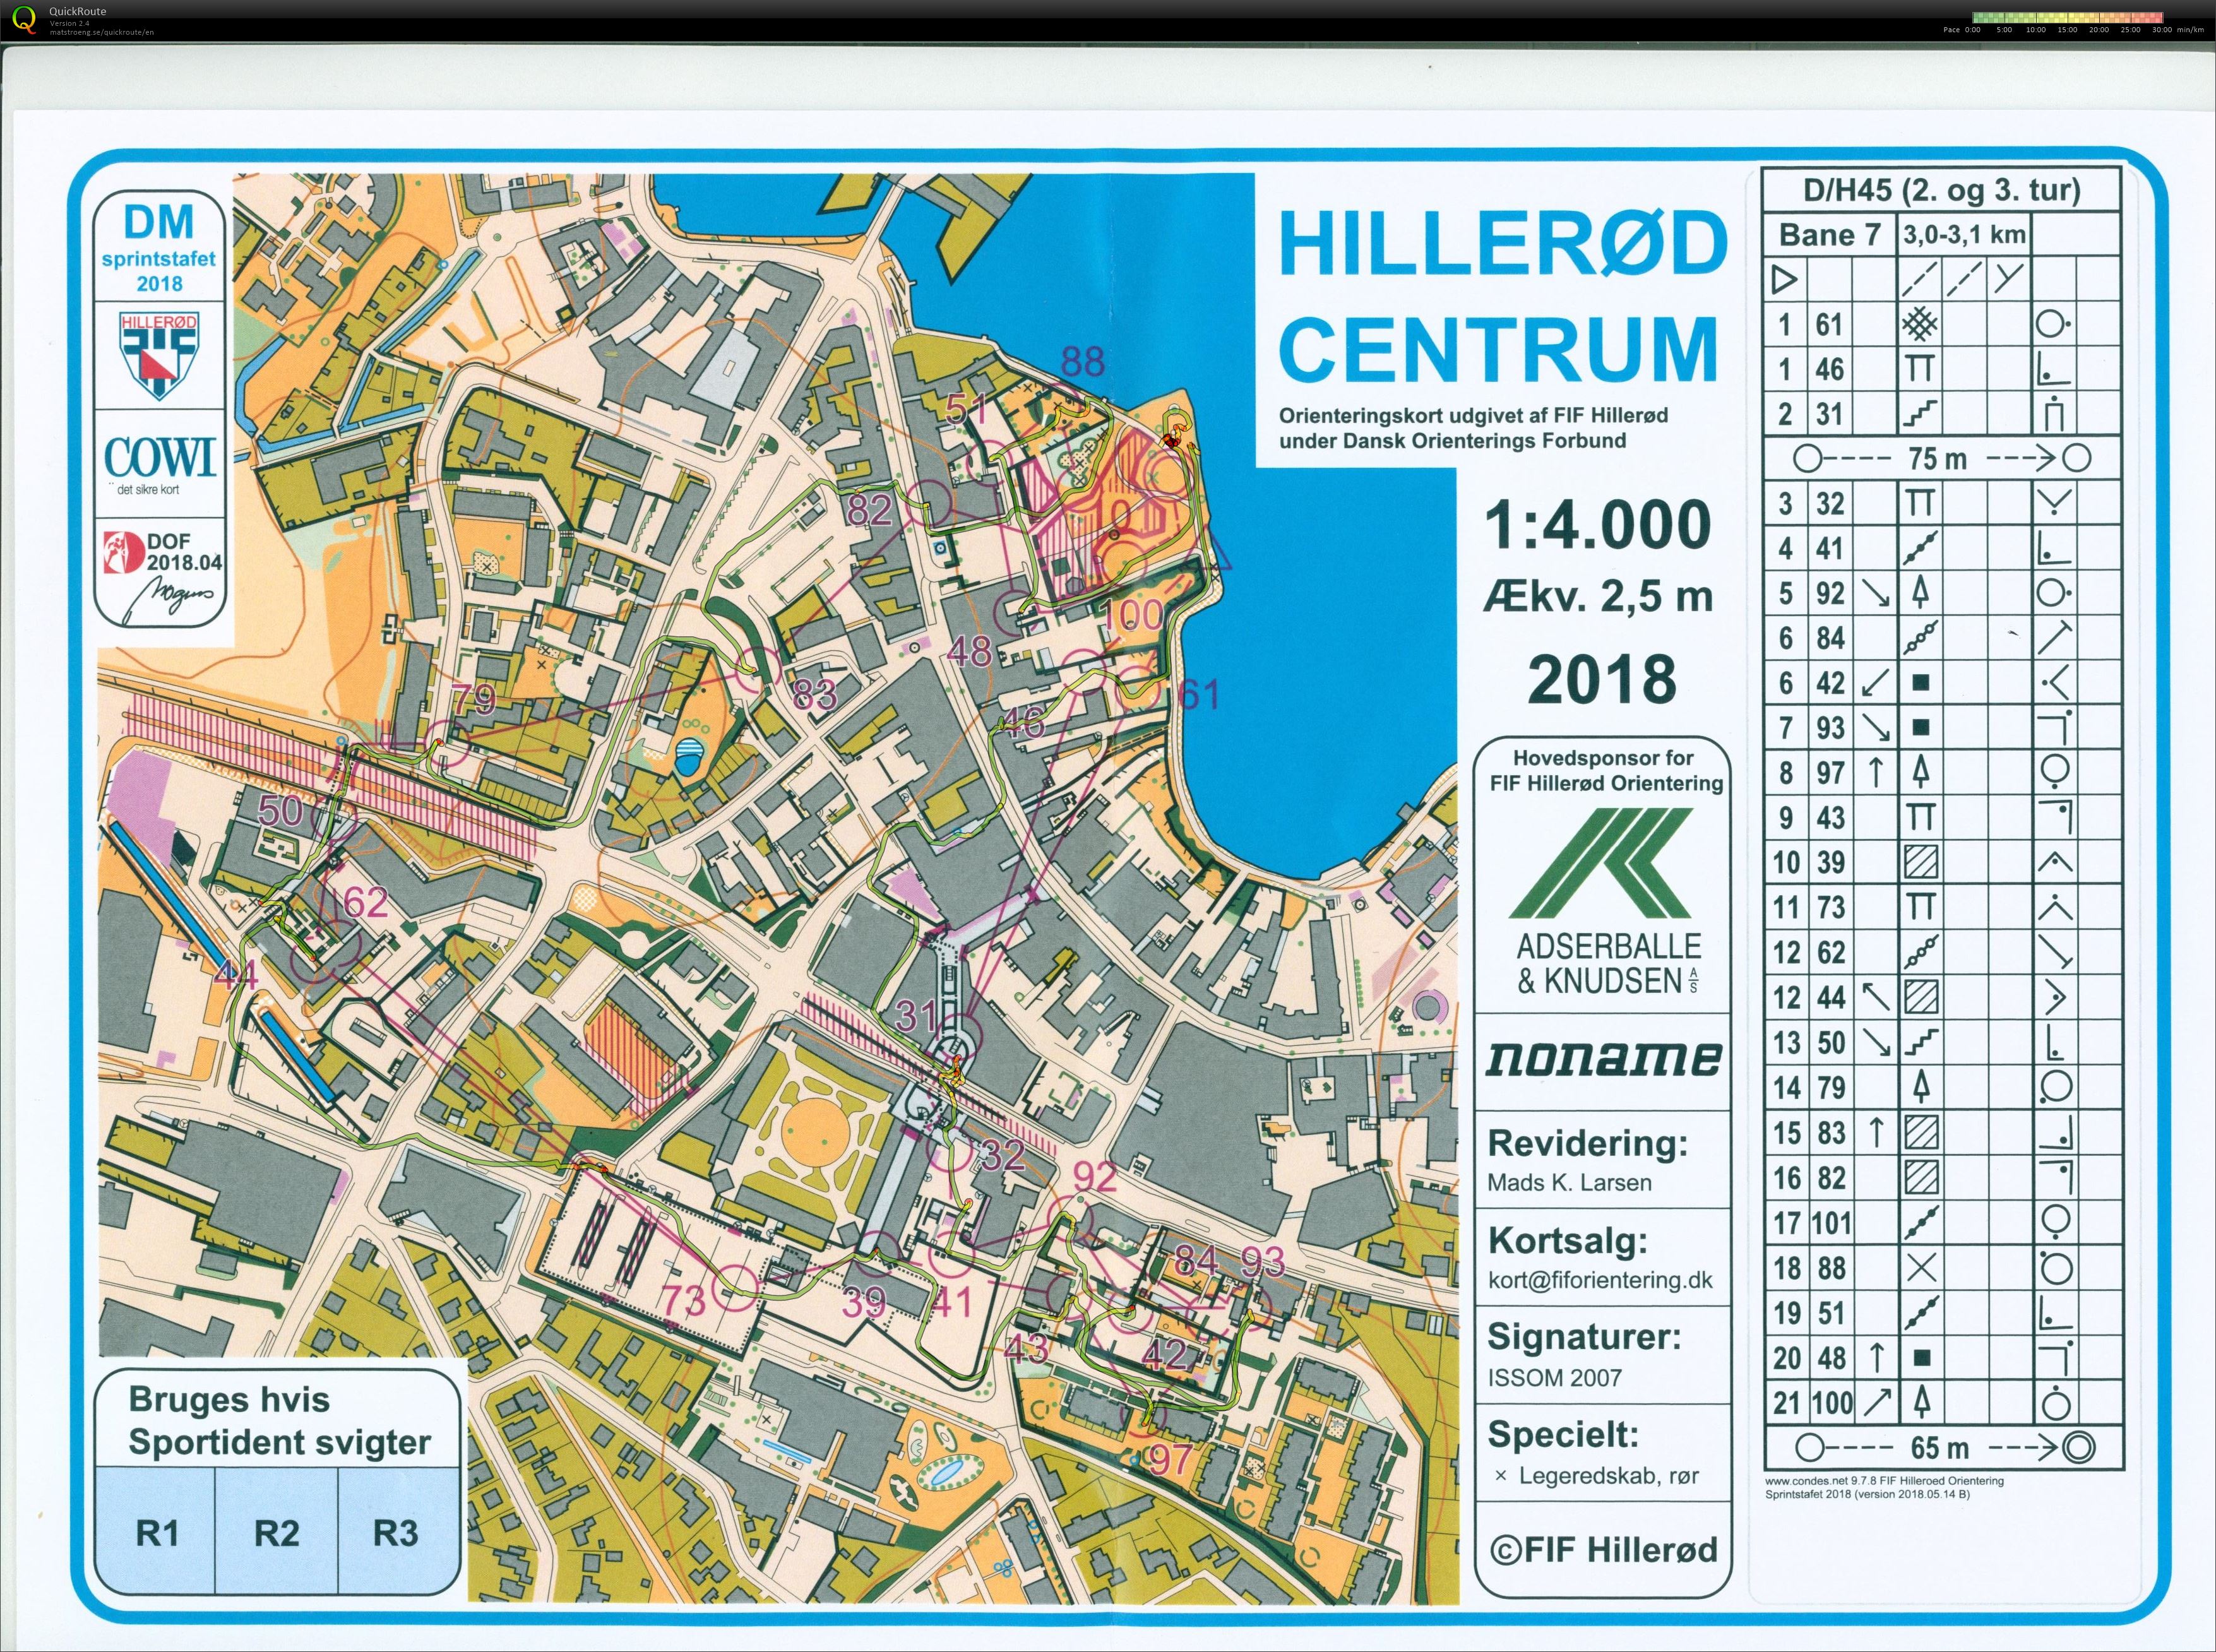 Hillerød sprint stafet D/H45 (27.05.2018)